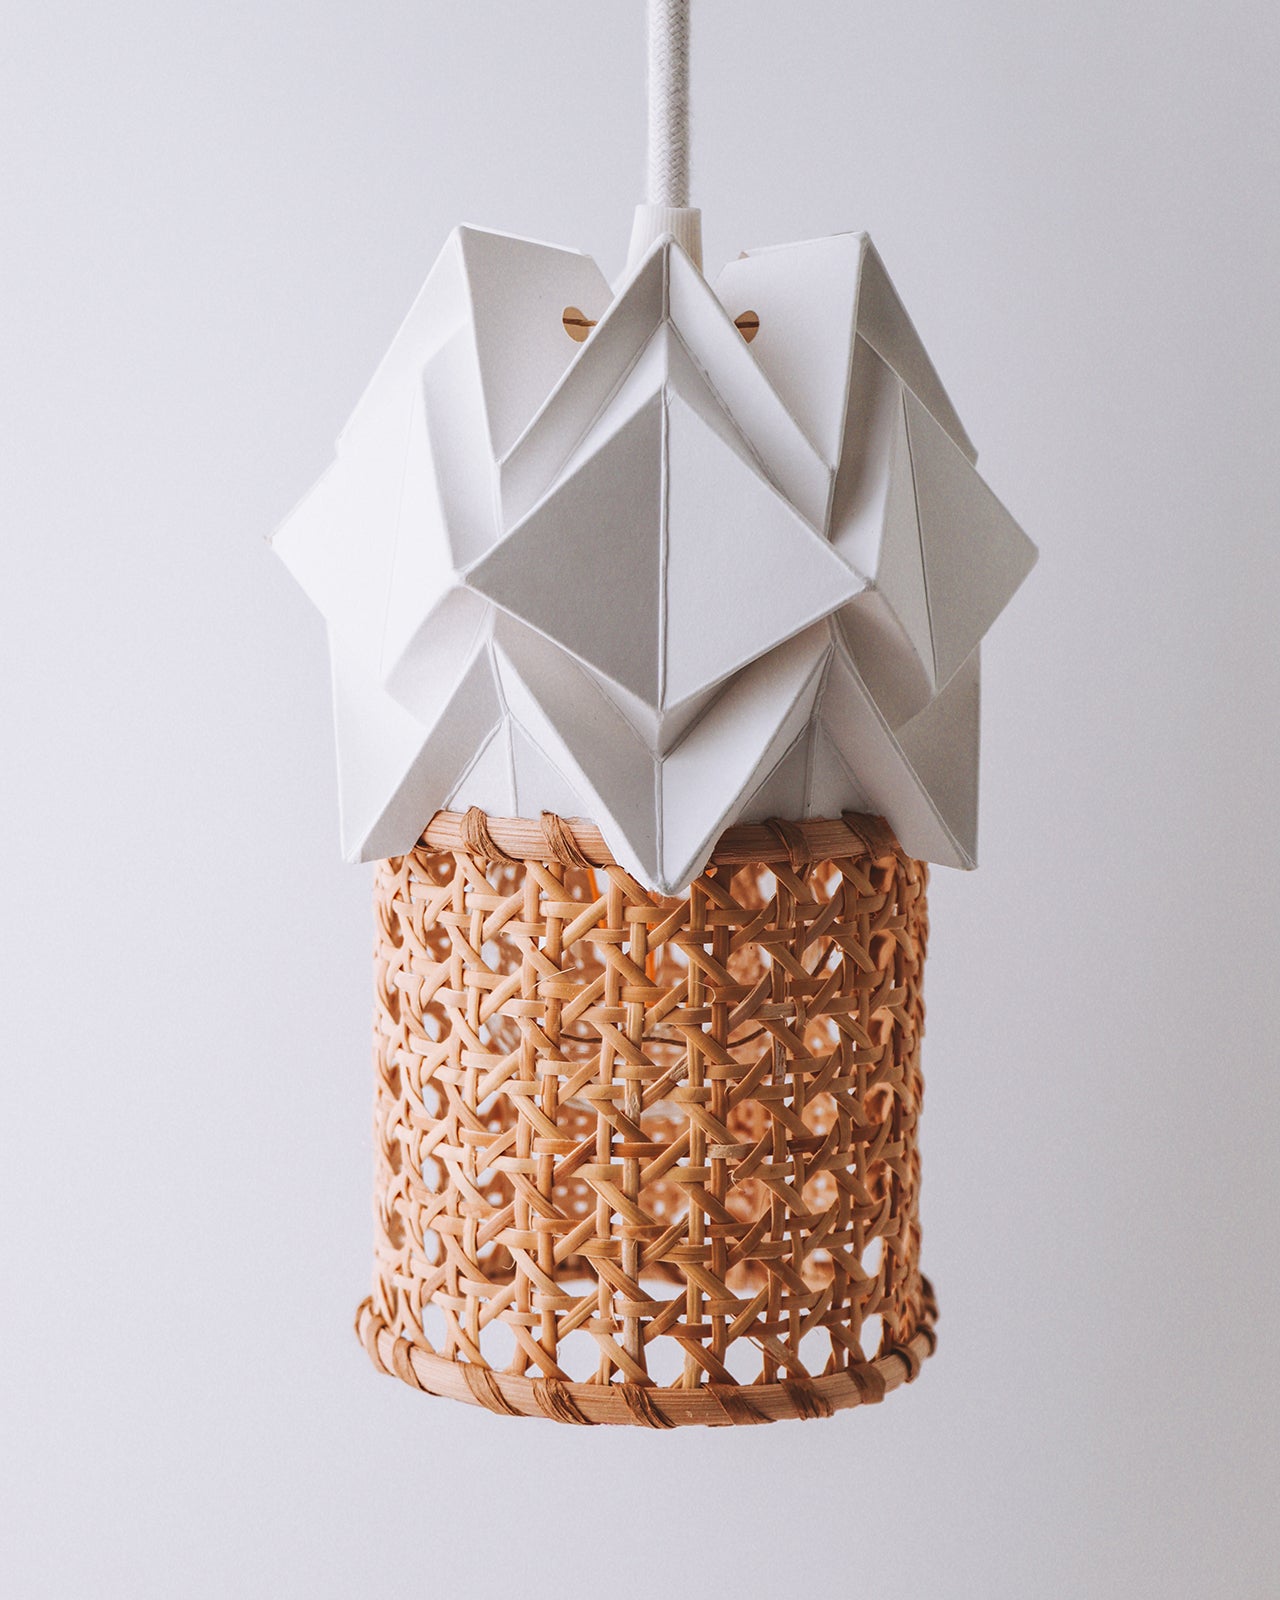 Petite suspension ORI en origami et cannage